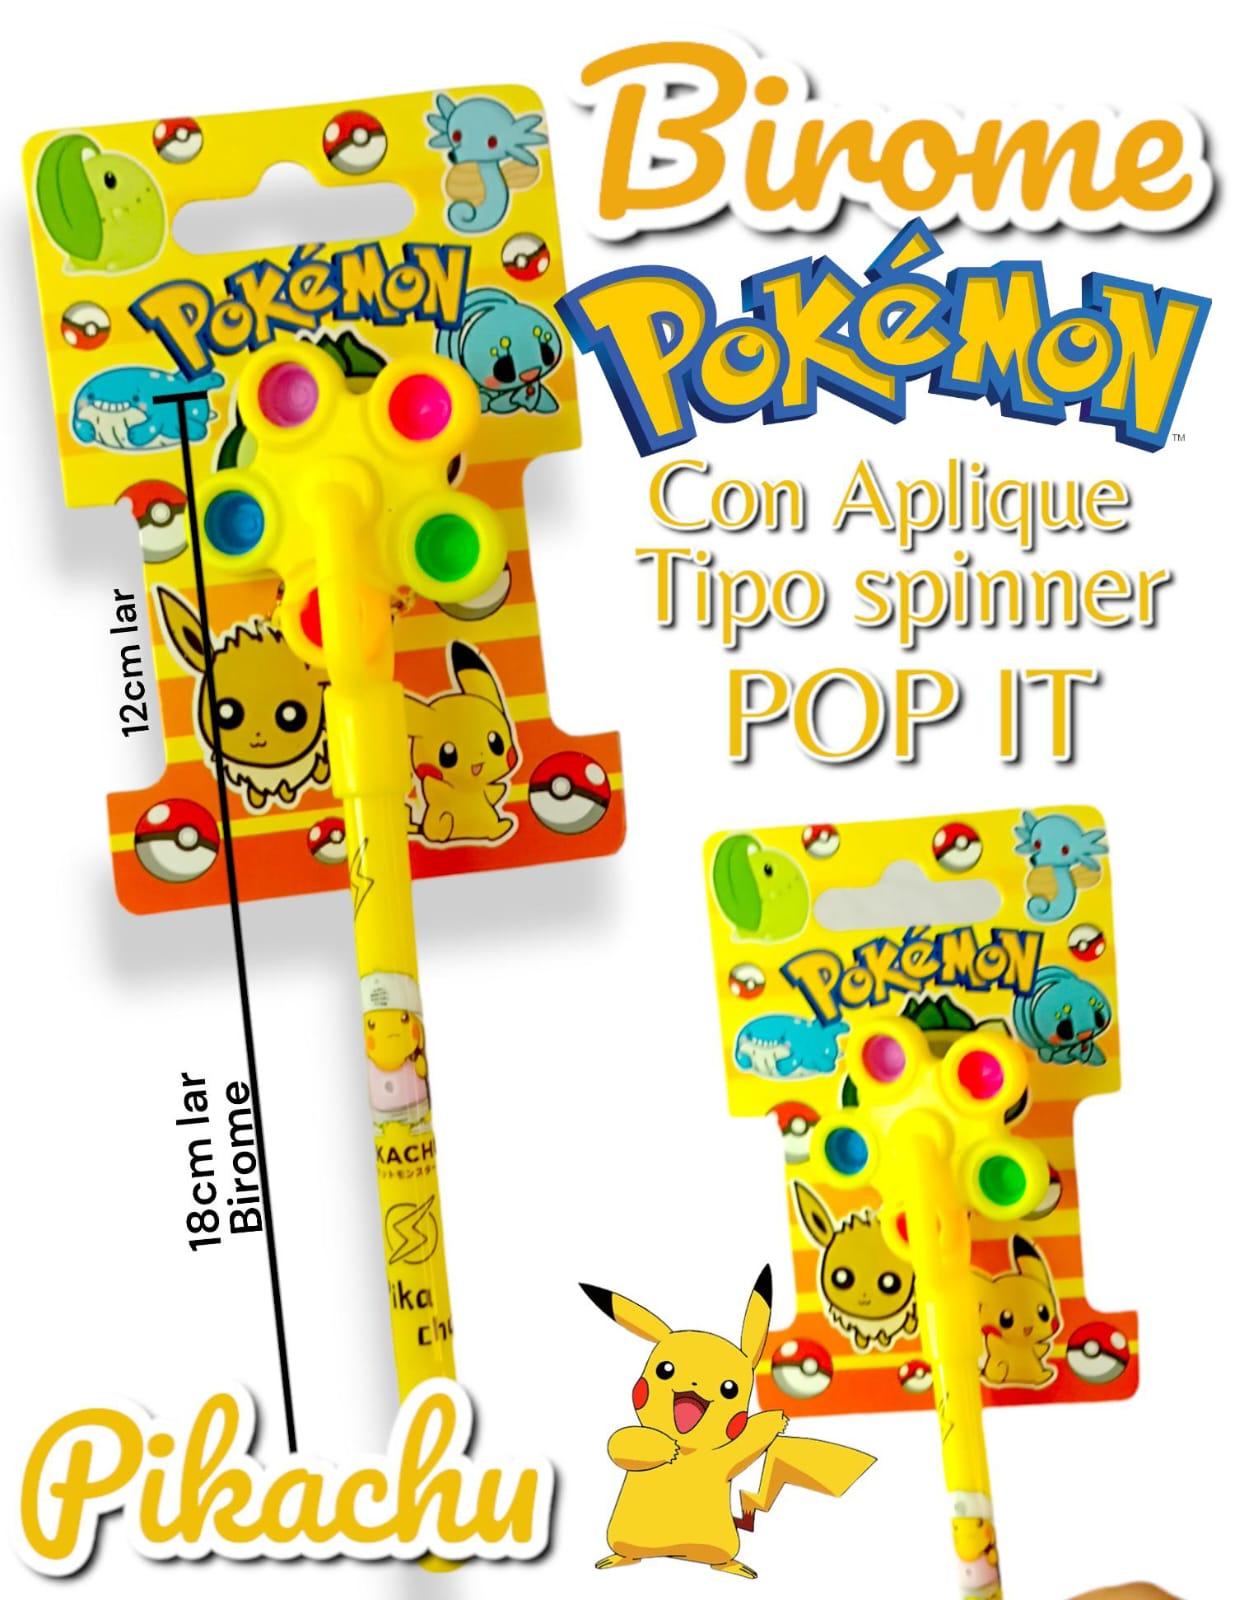 Birome Pokemon Con Aplique Tipo Spinner POP IT (Con Carton Exhibidor)